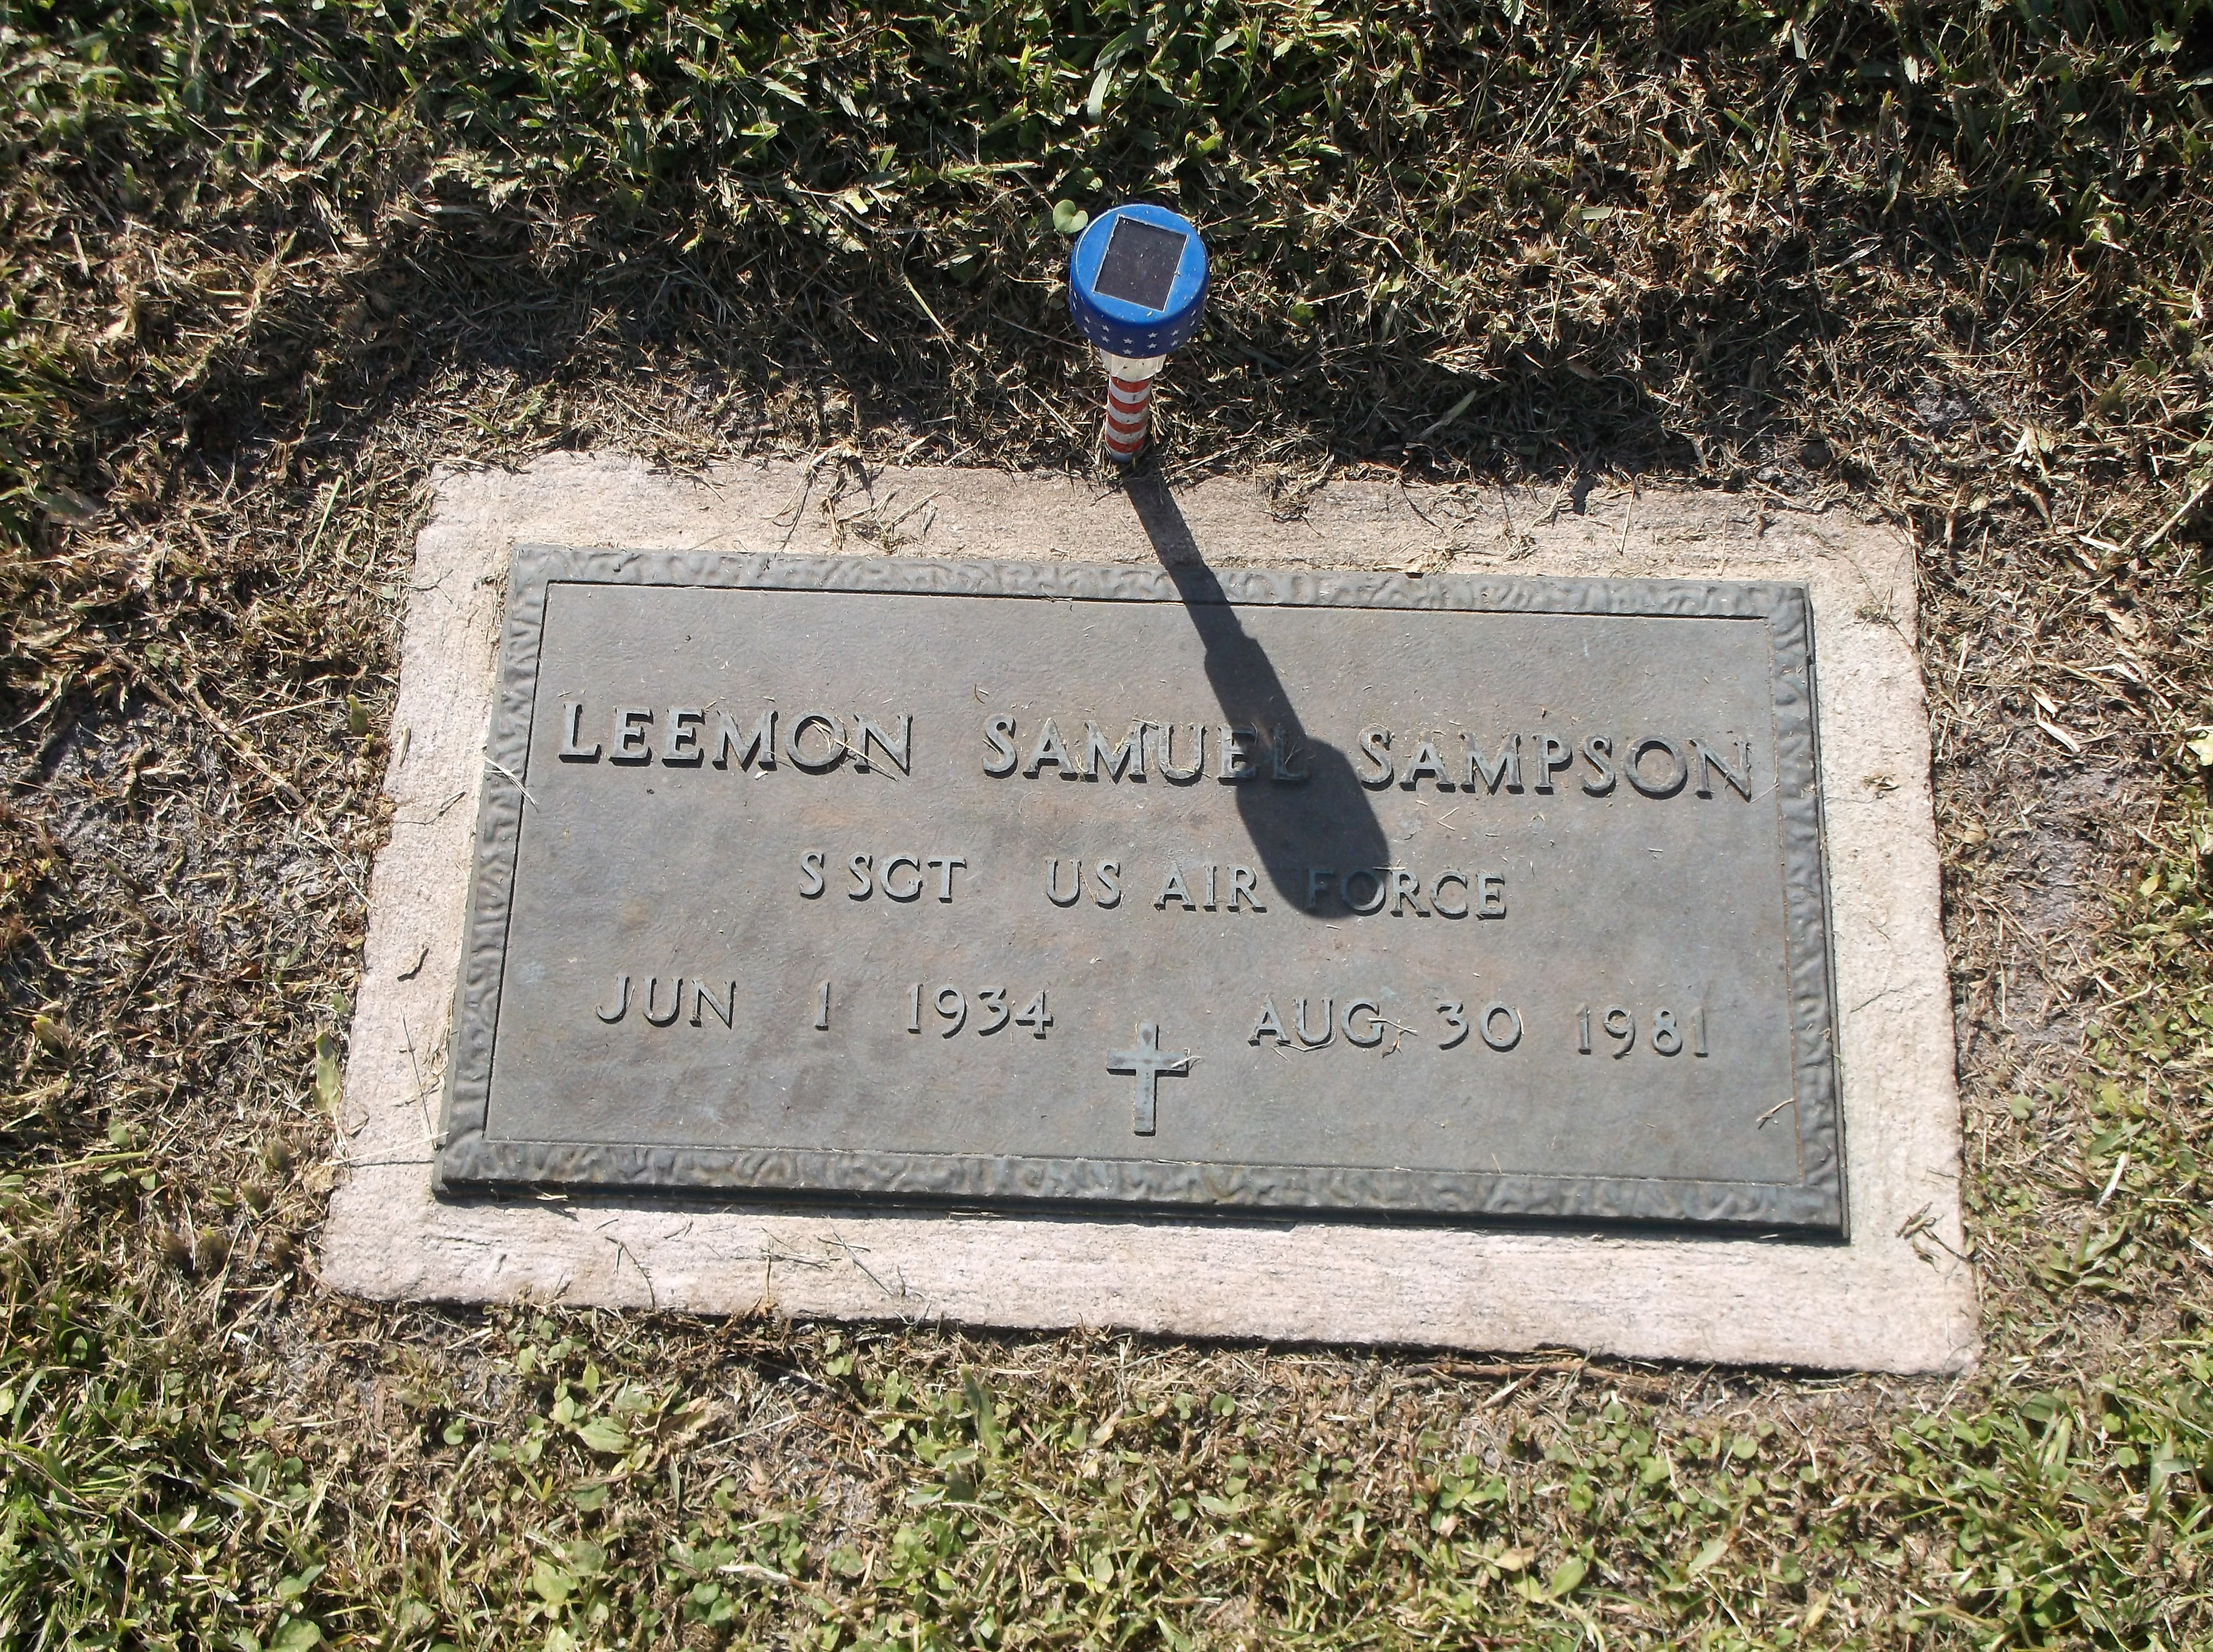 Leemon Samuel Sampson